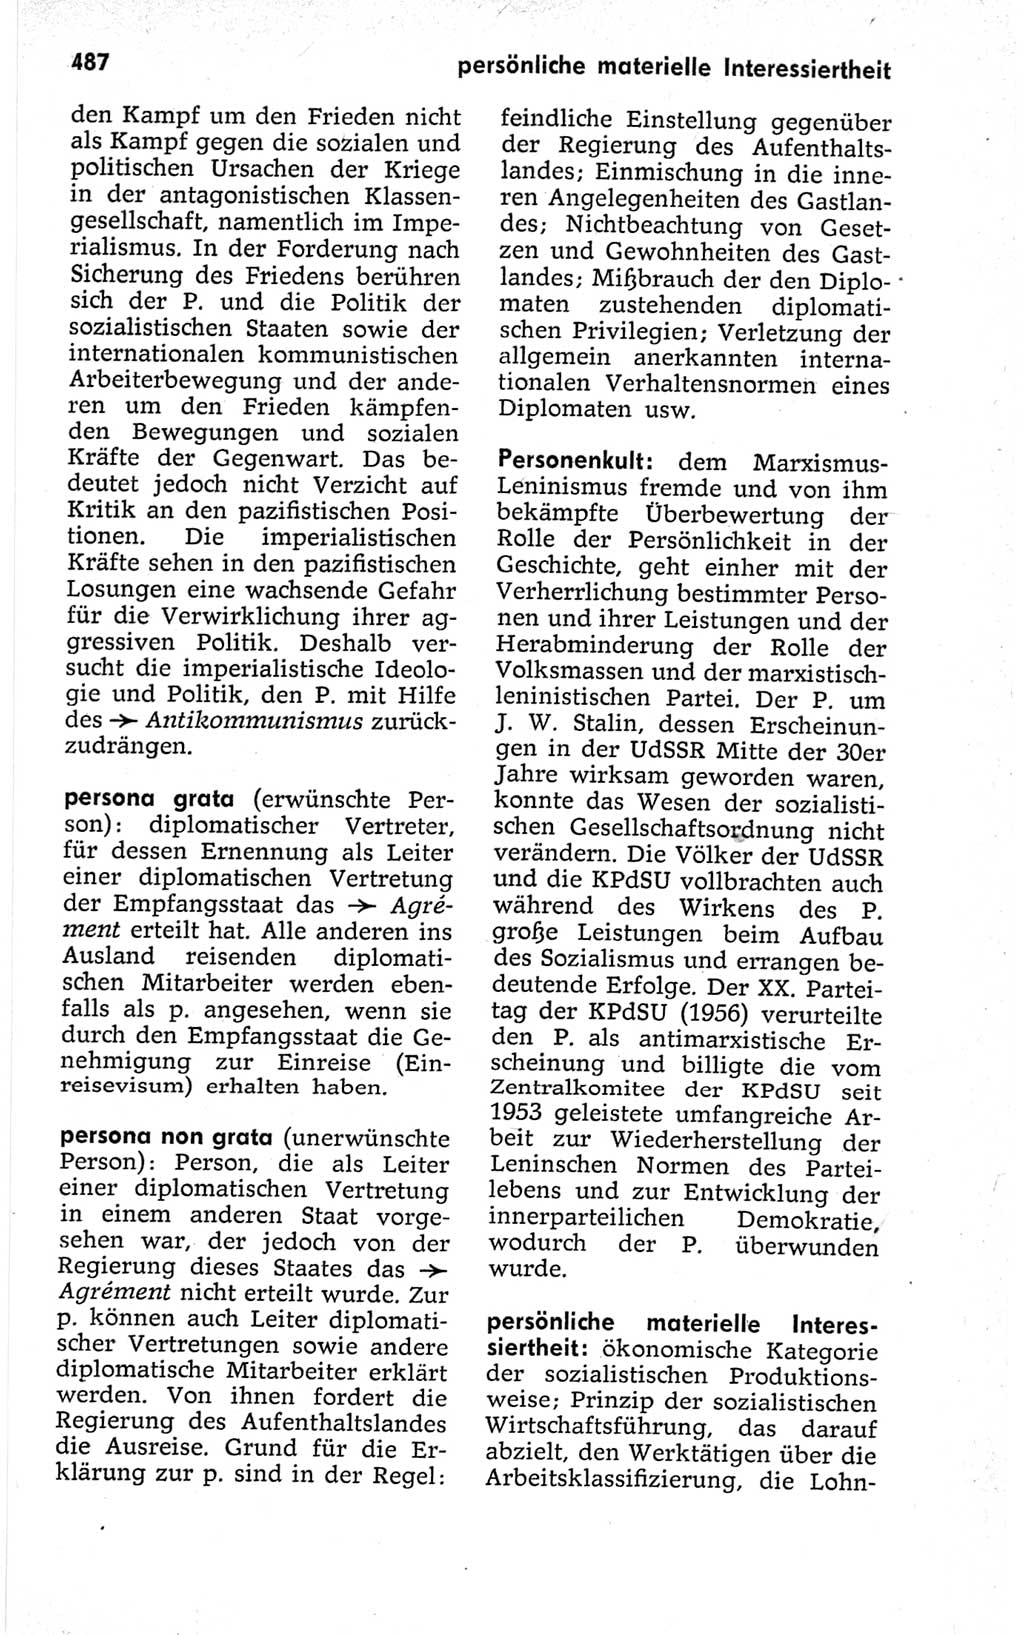 Kleines politisches Wörterbuch [Deutsche Demokratische Republik (DDR)] 1967, Seite 487 (Kl. pol. Wb. DDR 1967, S. 487)